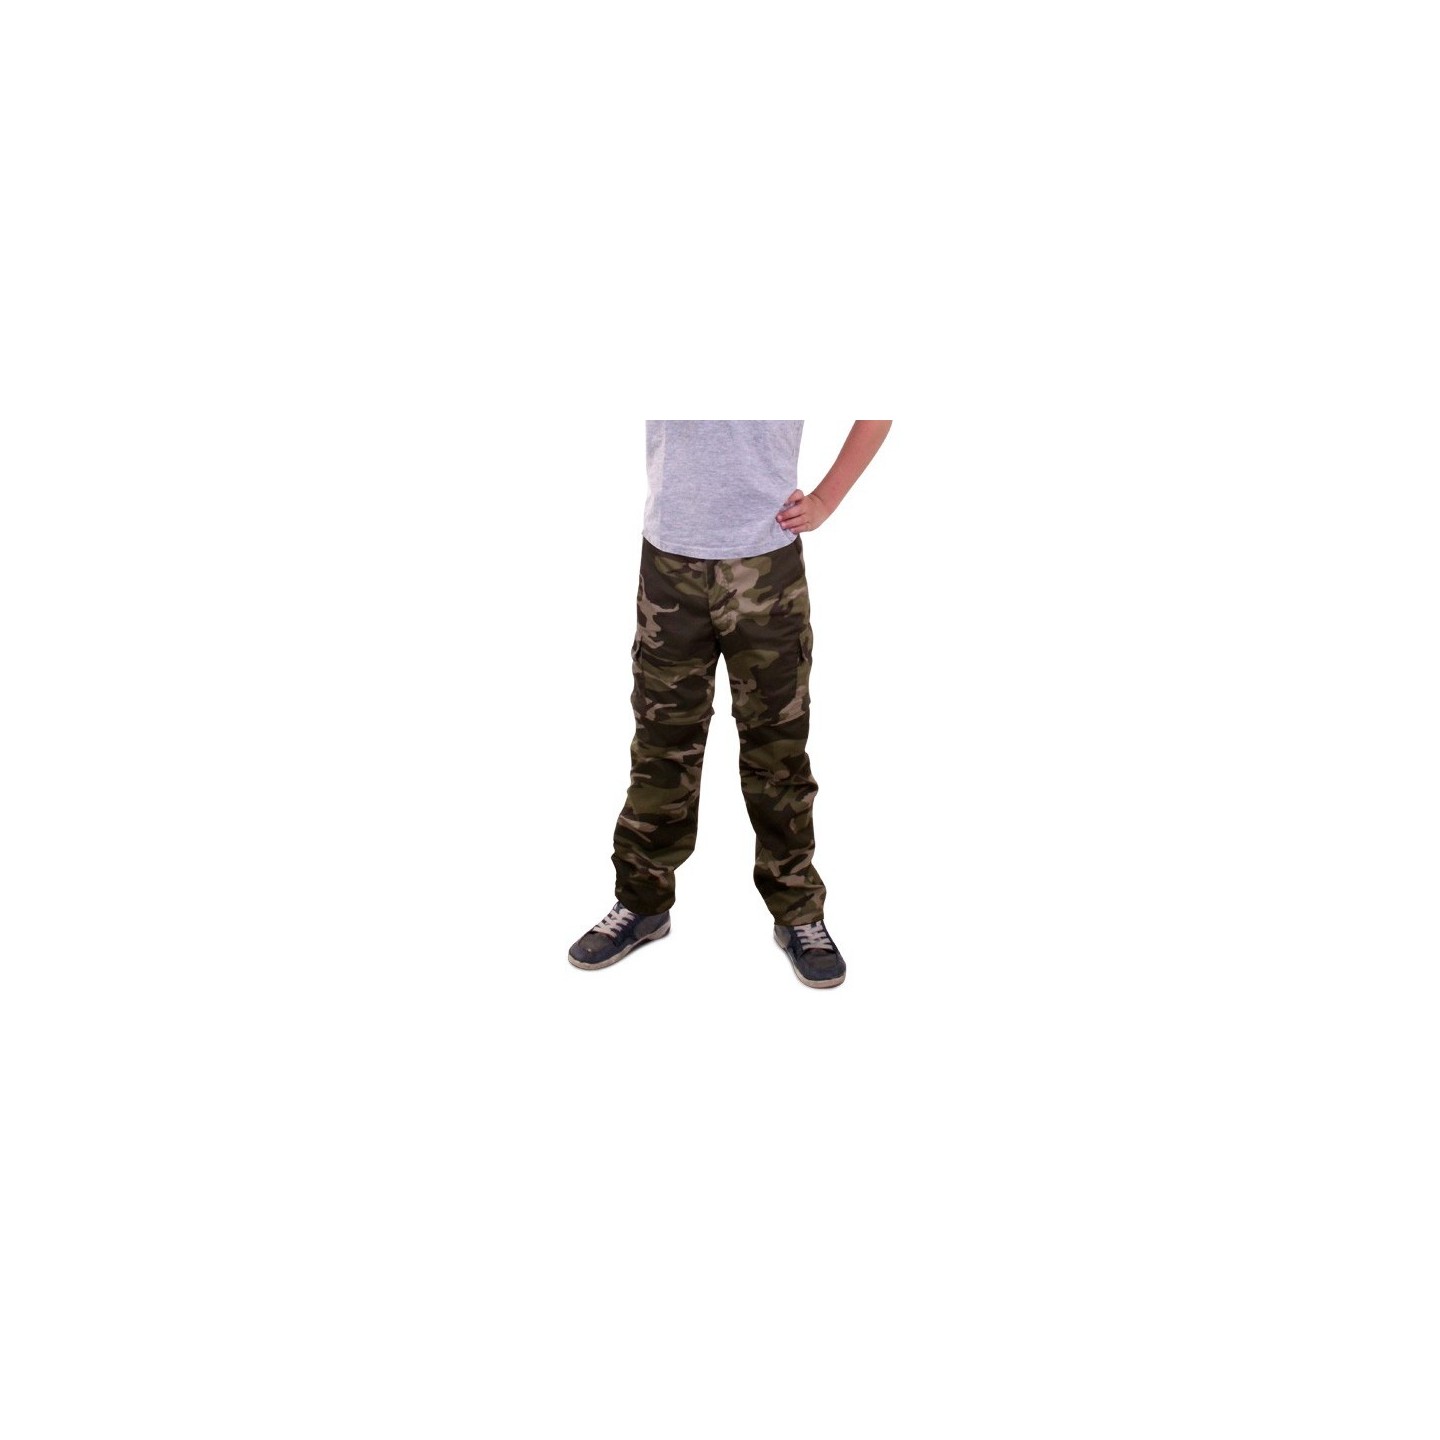 Nest Microbe Premisse Camouflage broek kind | Jokershop.be - Leger verkleedkleding